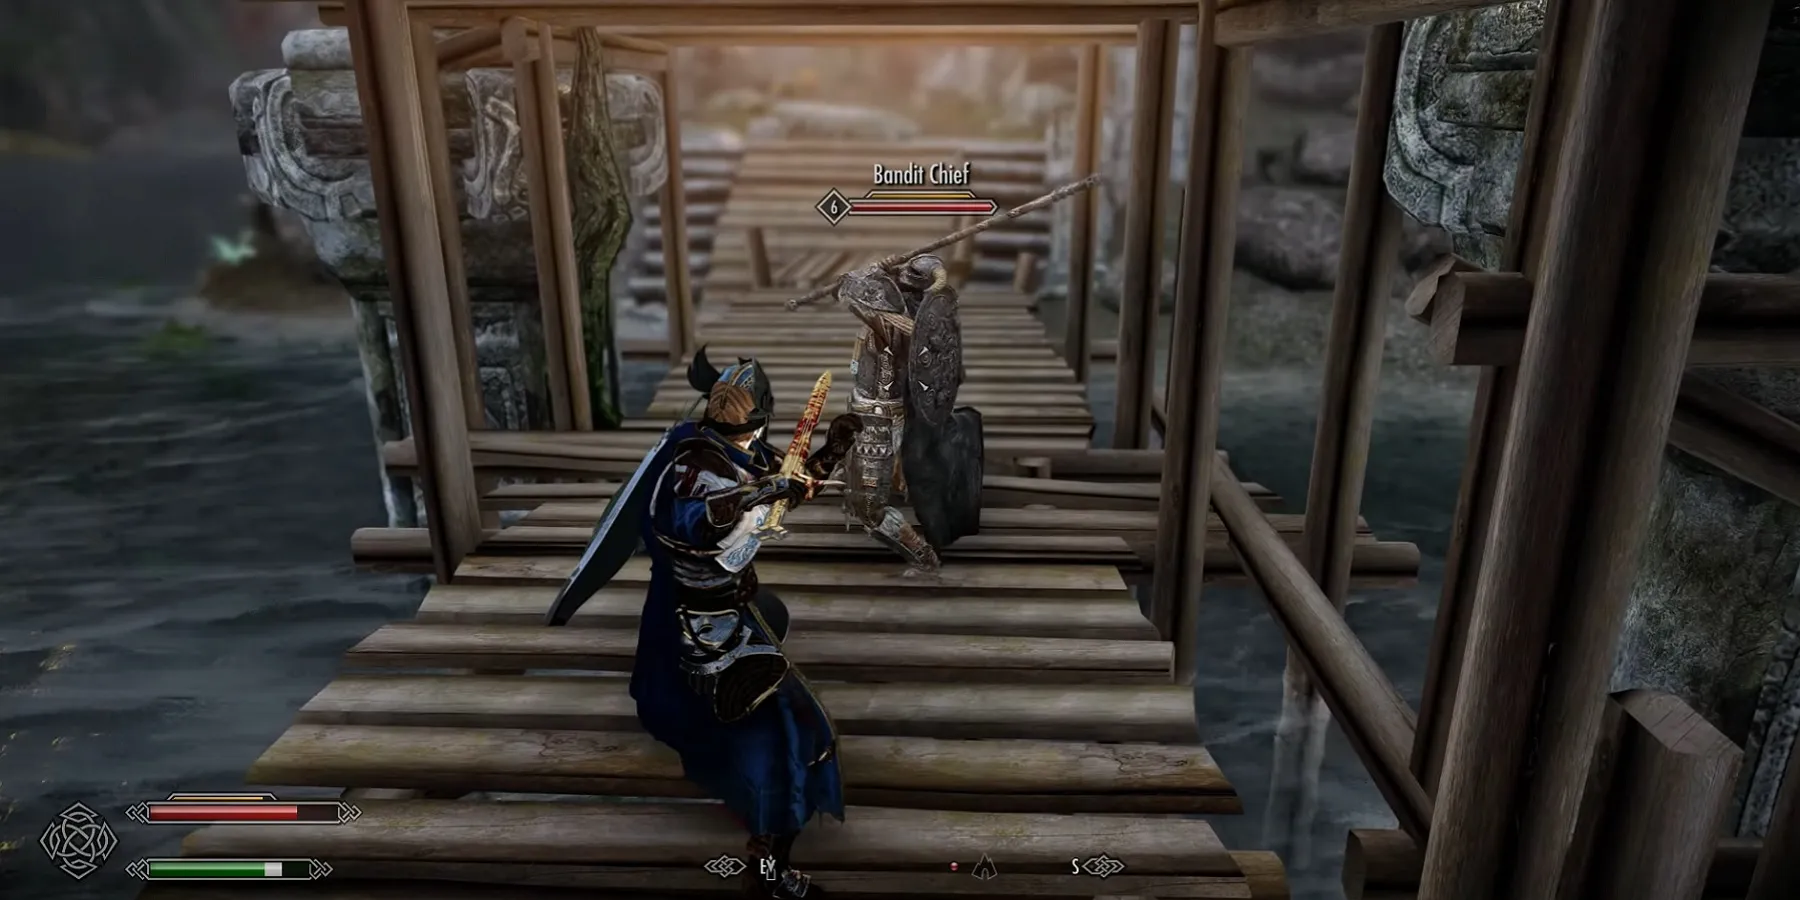 Imagen de Skyrim que muestra a dos personas a punto de enfrentarse en un puente.